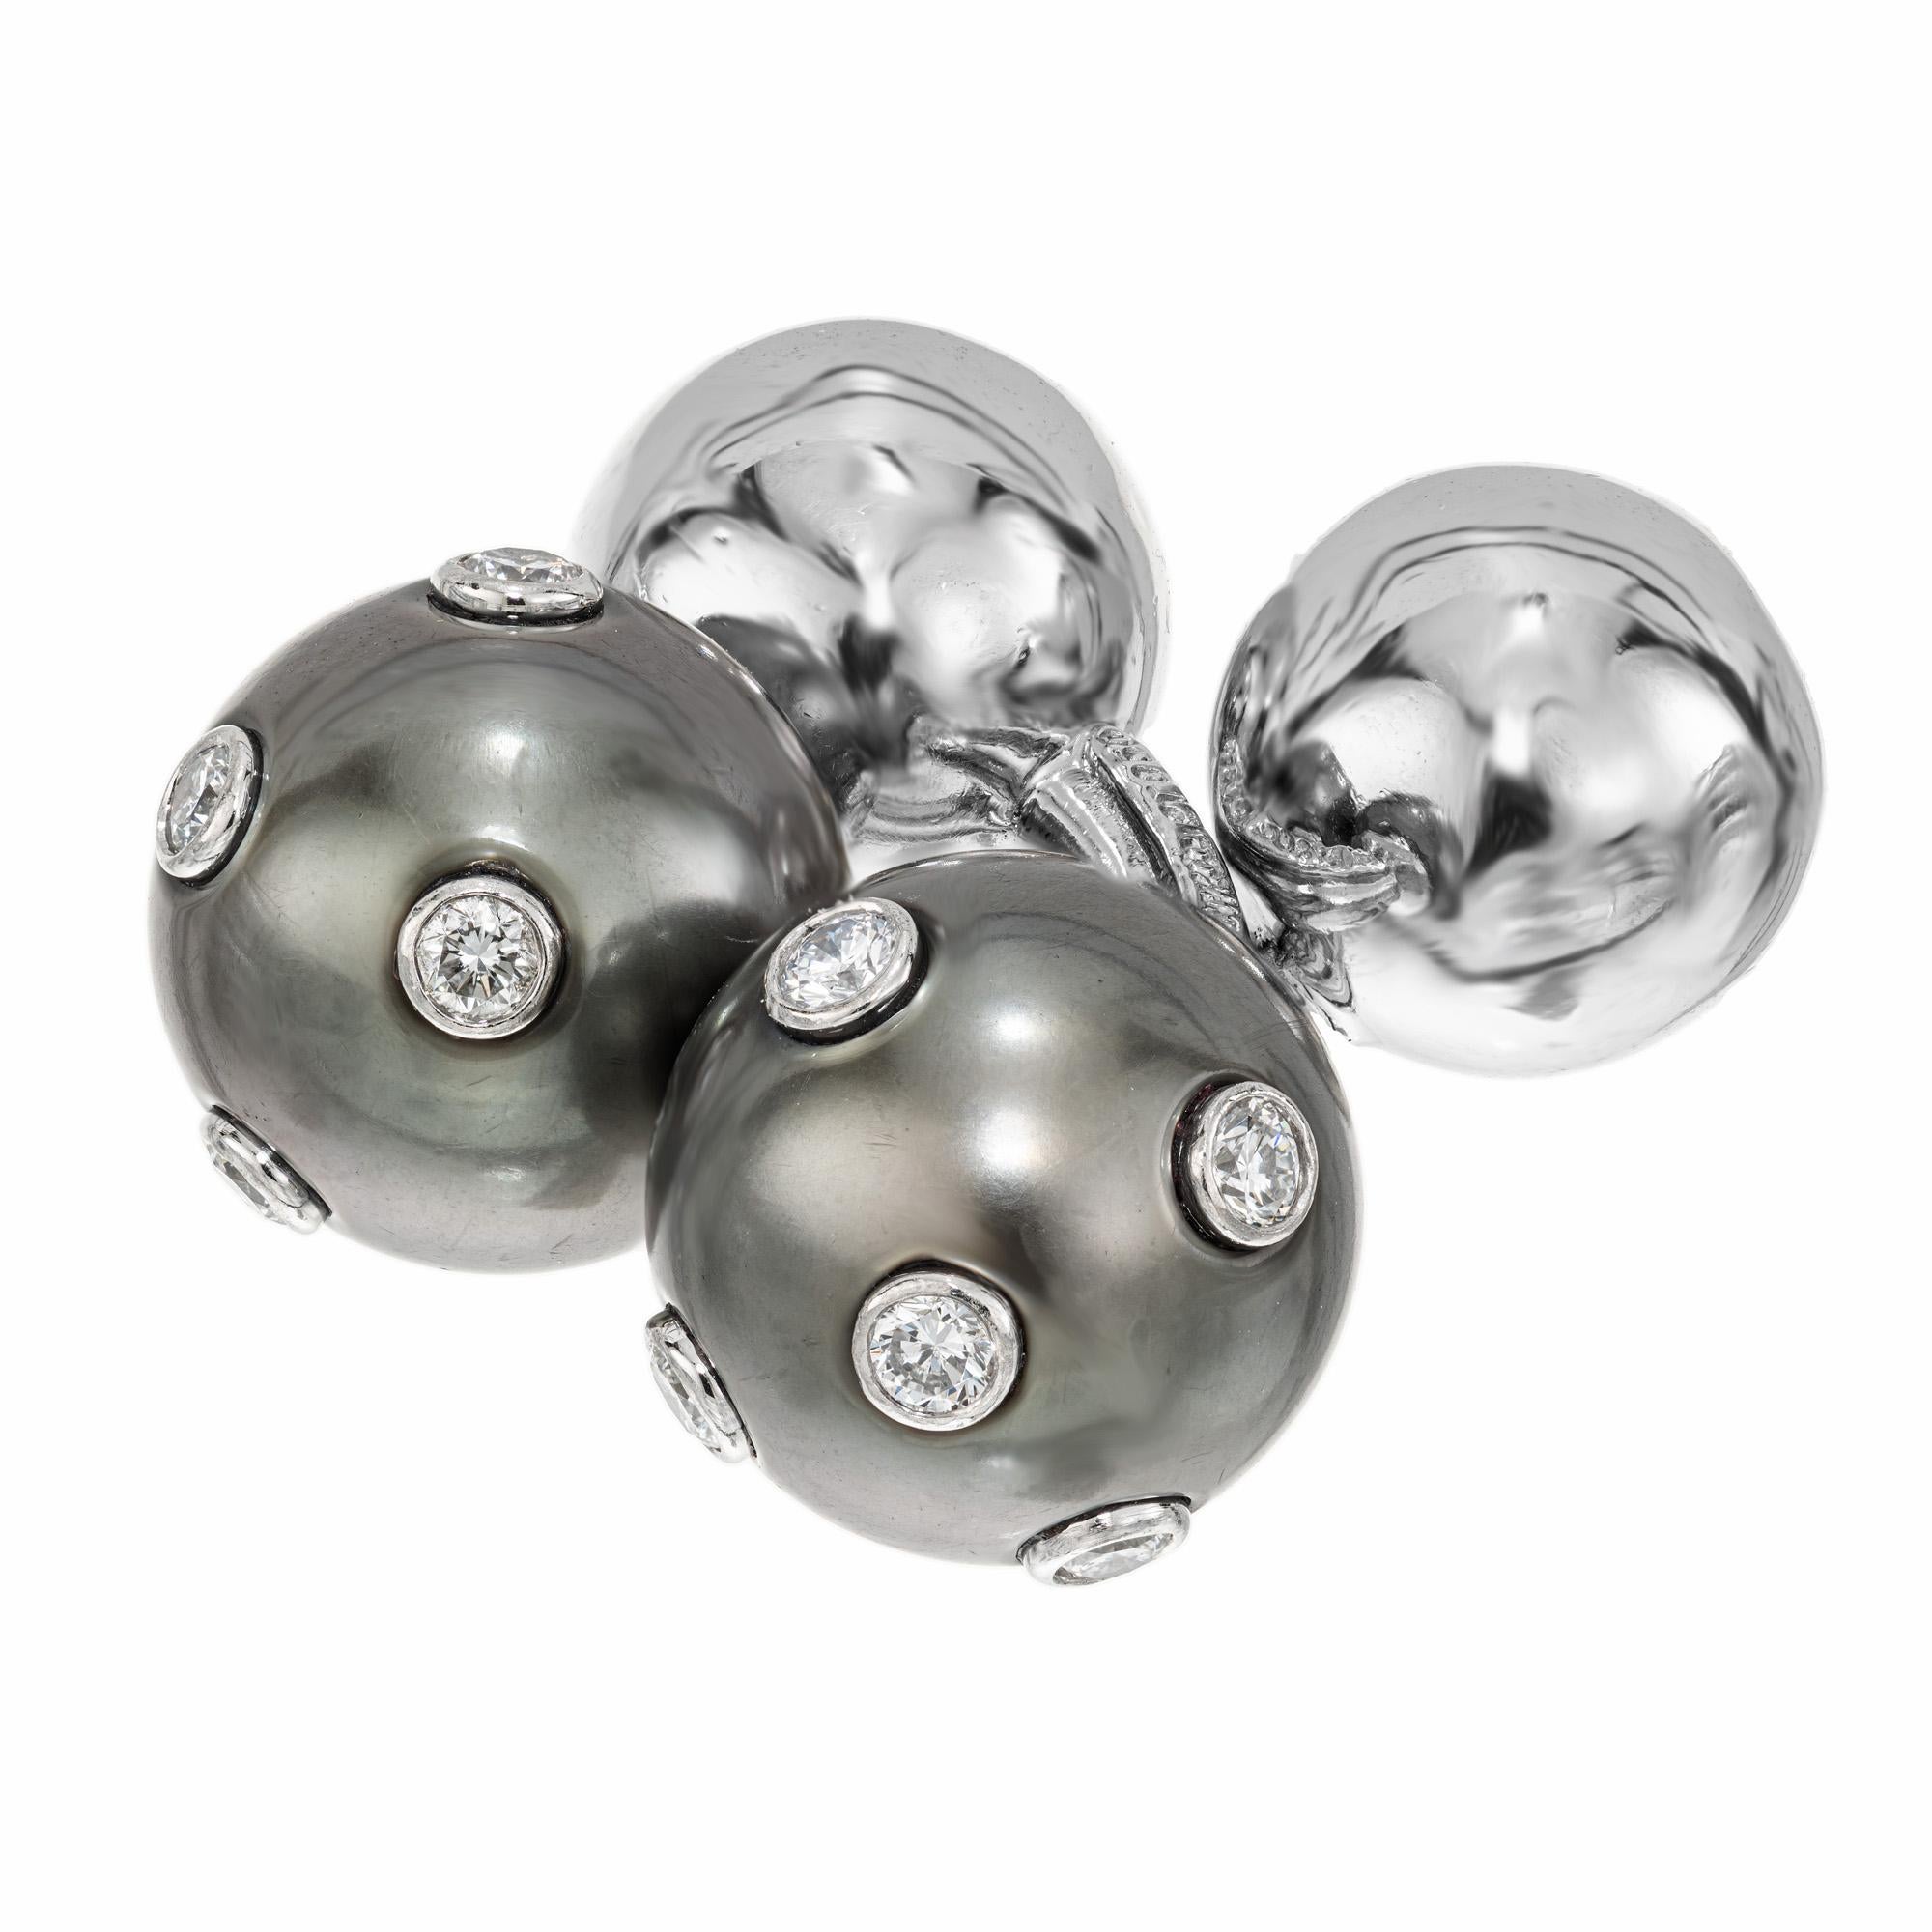 Boutons de manchette Tiffany & Co. en perles noires et diamants.  Ces boutons de manchette en platine avec barrette de perles de culture noires sont ornés de 10 diamants ronds sertis en chaton, d'une valeur totale de 0,20 ct. à une extrémité. À